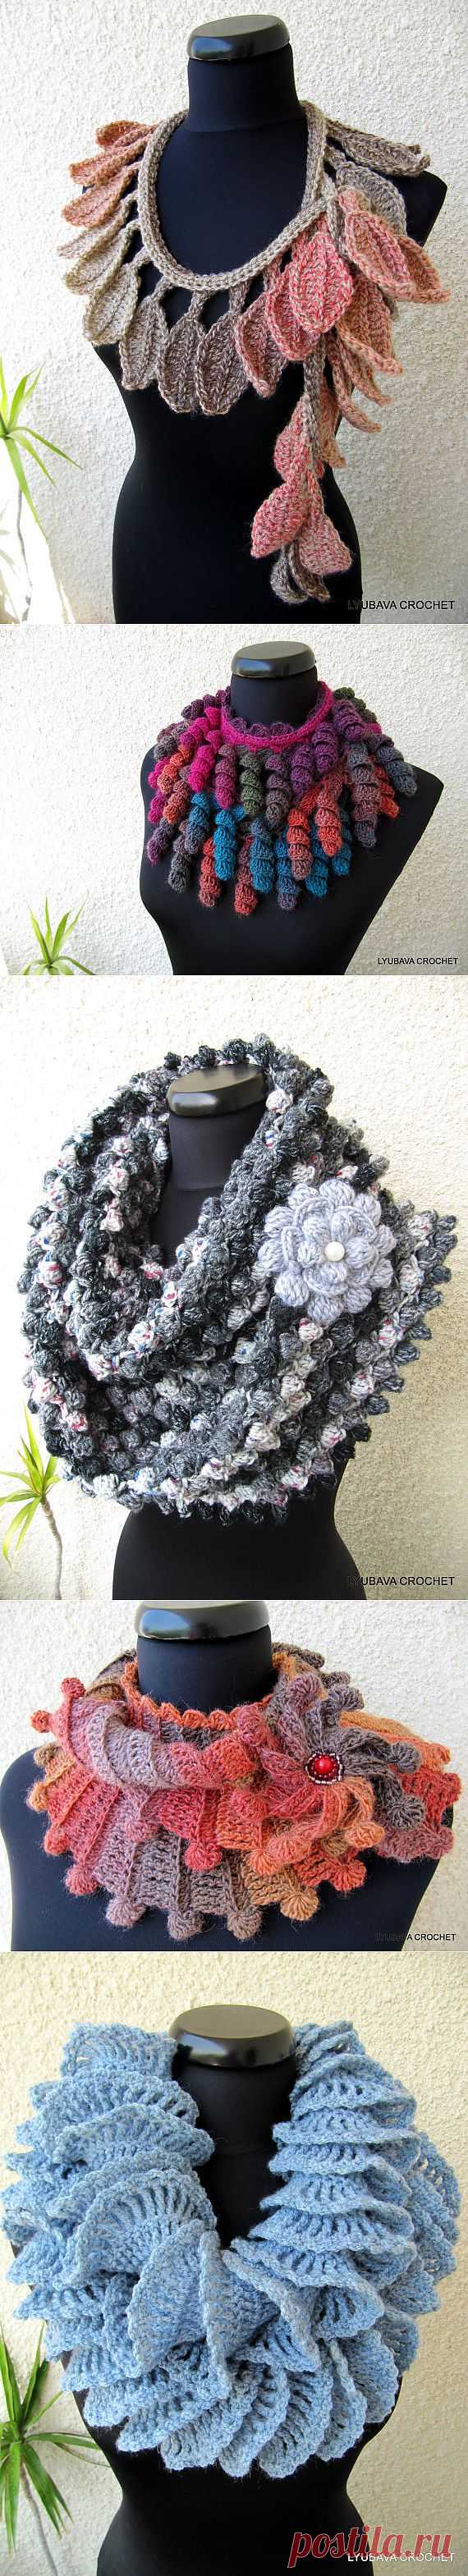 Вязанные шарфы осень-зима 2013, красивые фото шарфов, | 3vision - Fashon blog